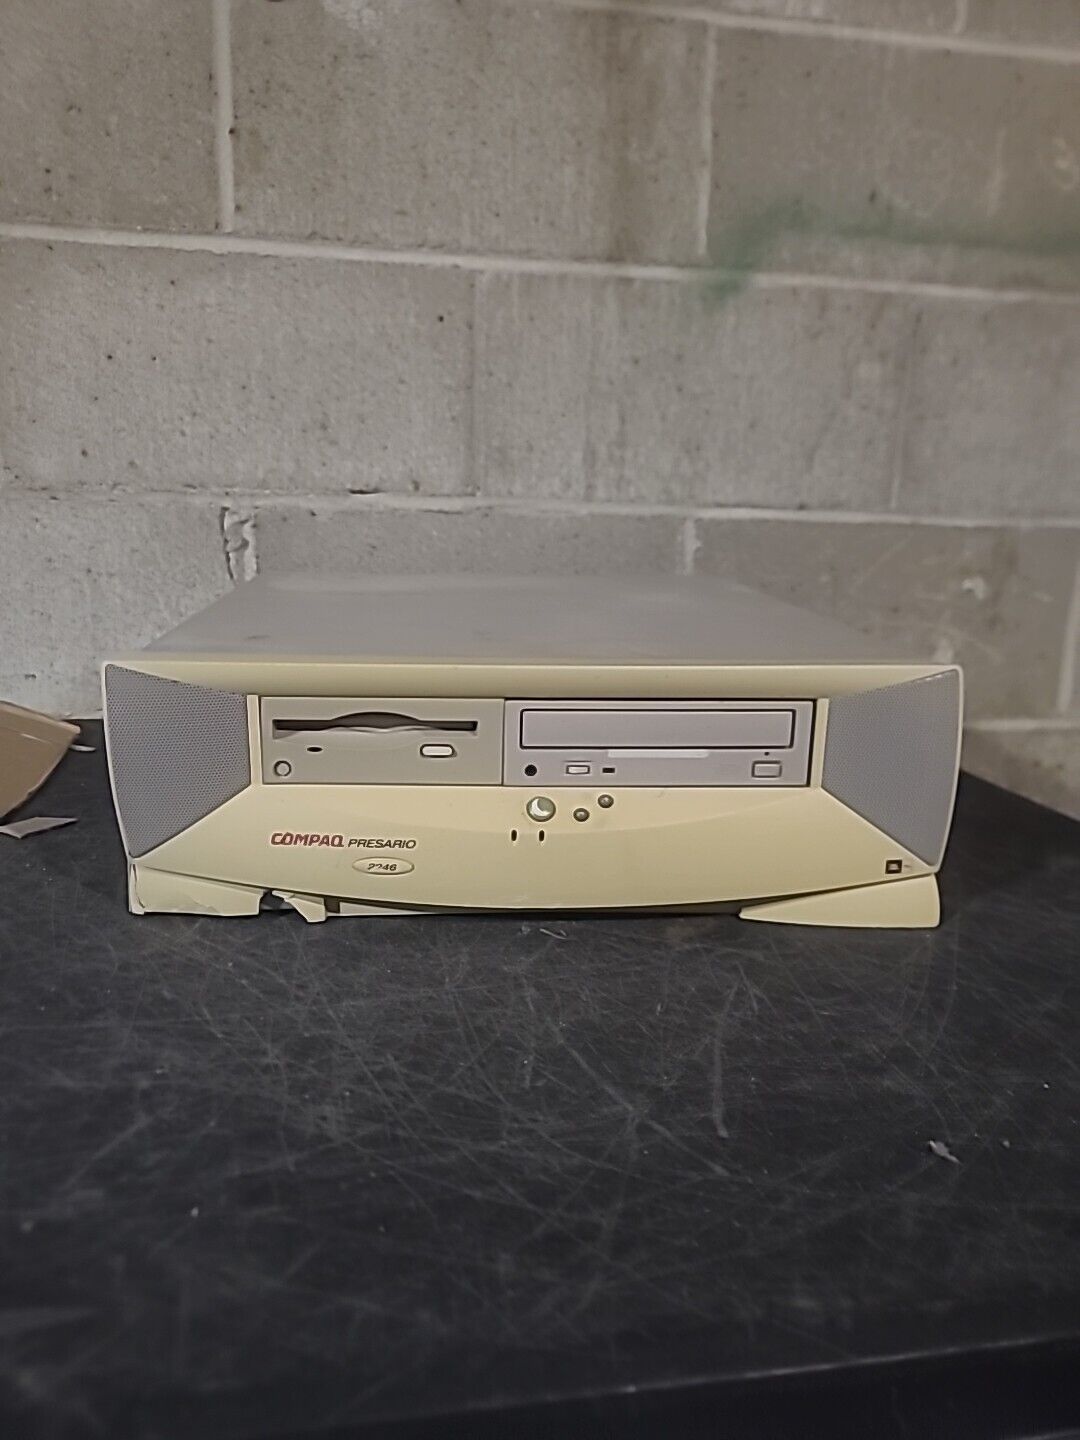 Vintage Compaq Presario 2246 Desktop Computer - Untested - Retro Gaming